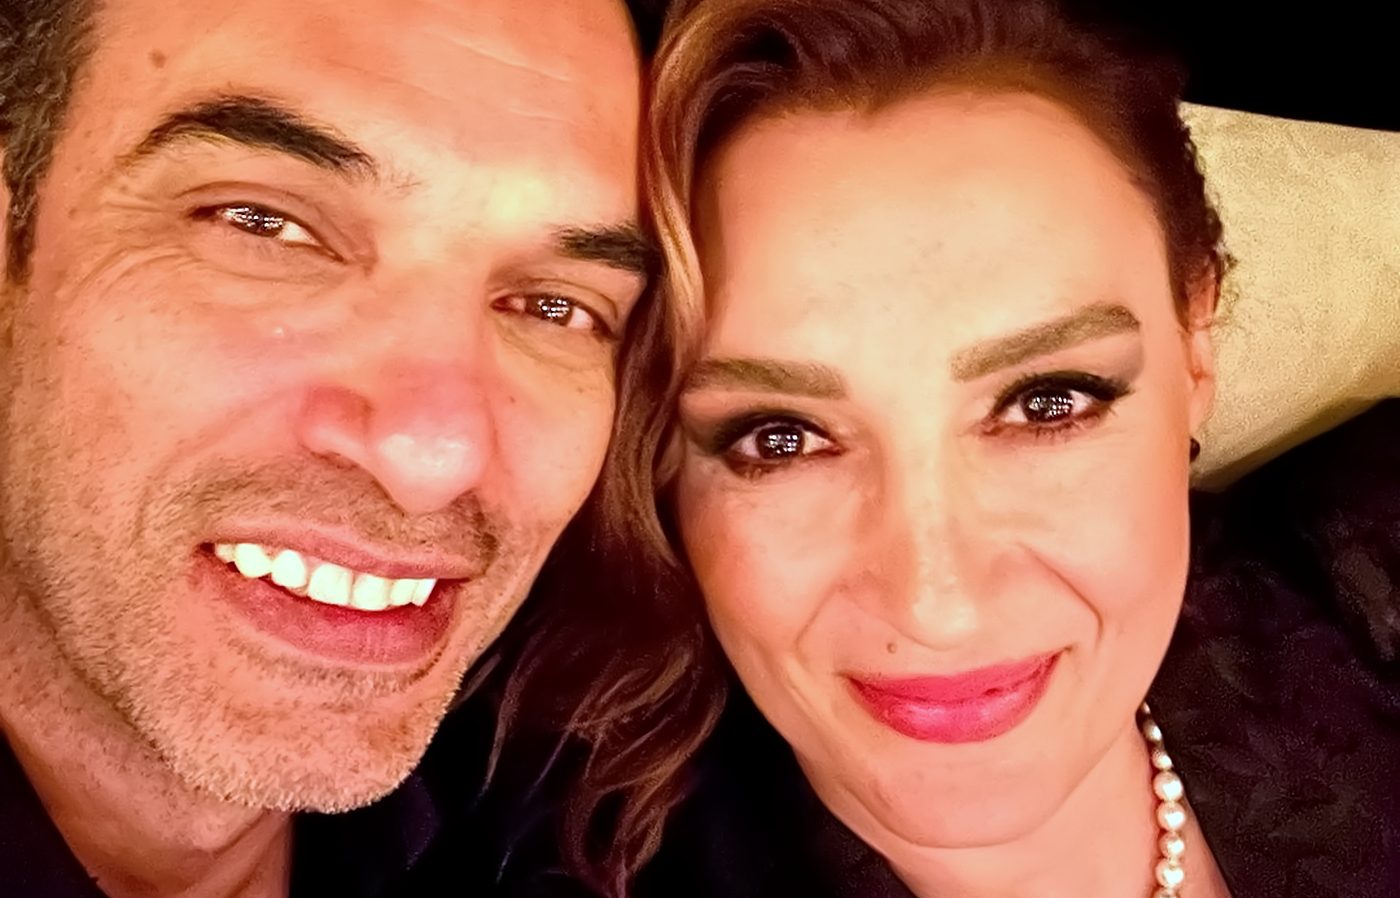 Uğur Aslan y Sema Ergenekon llevan más de 25 años de casados